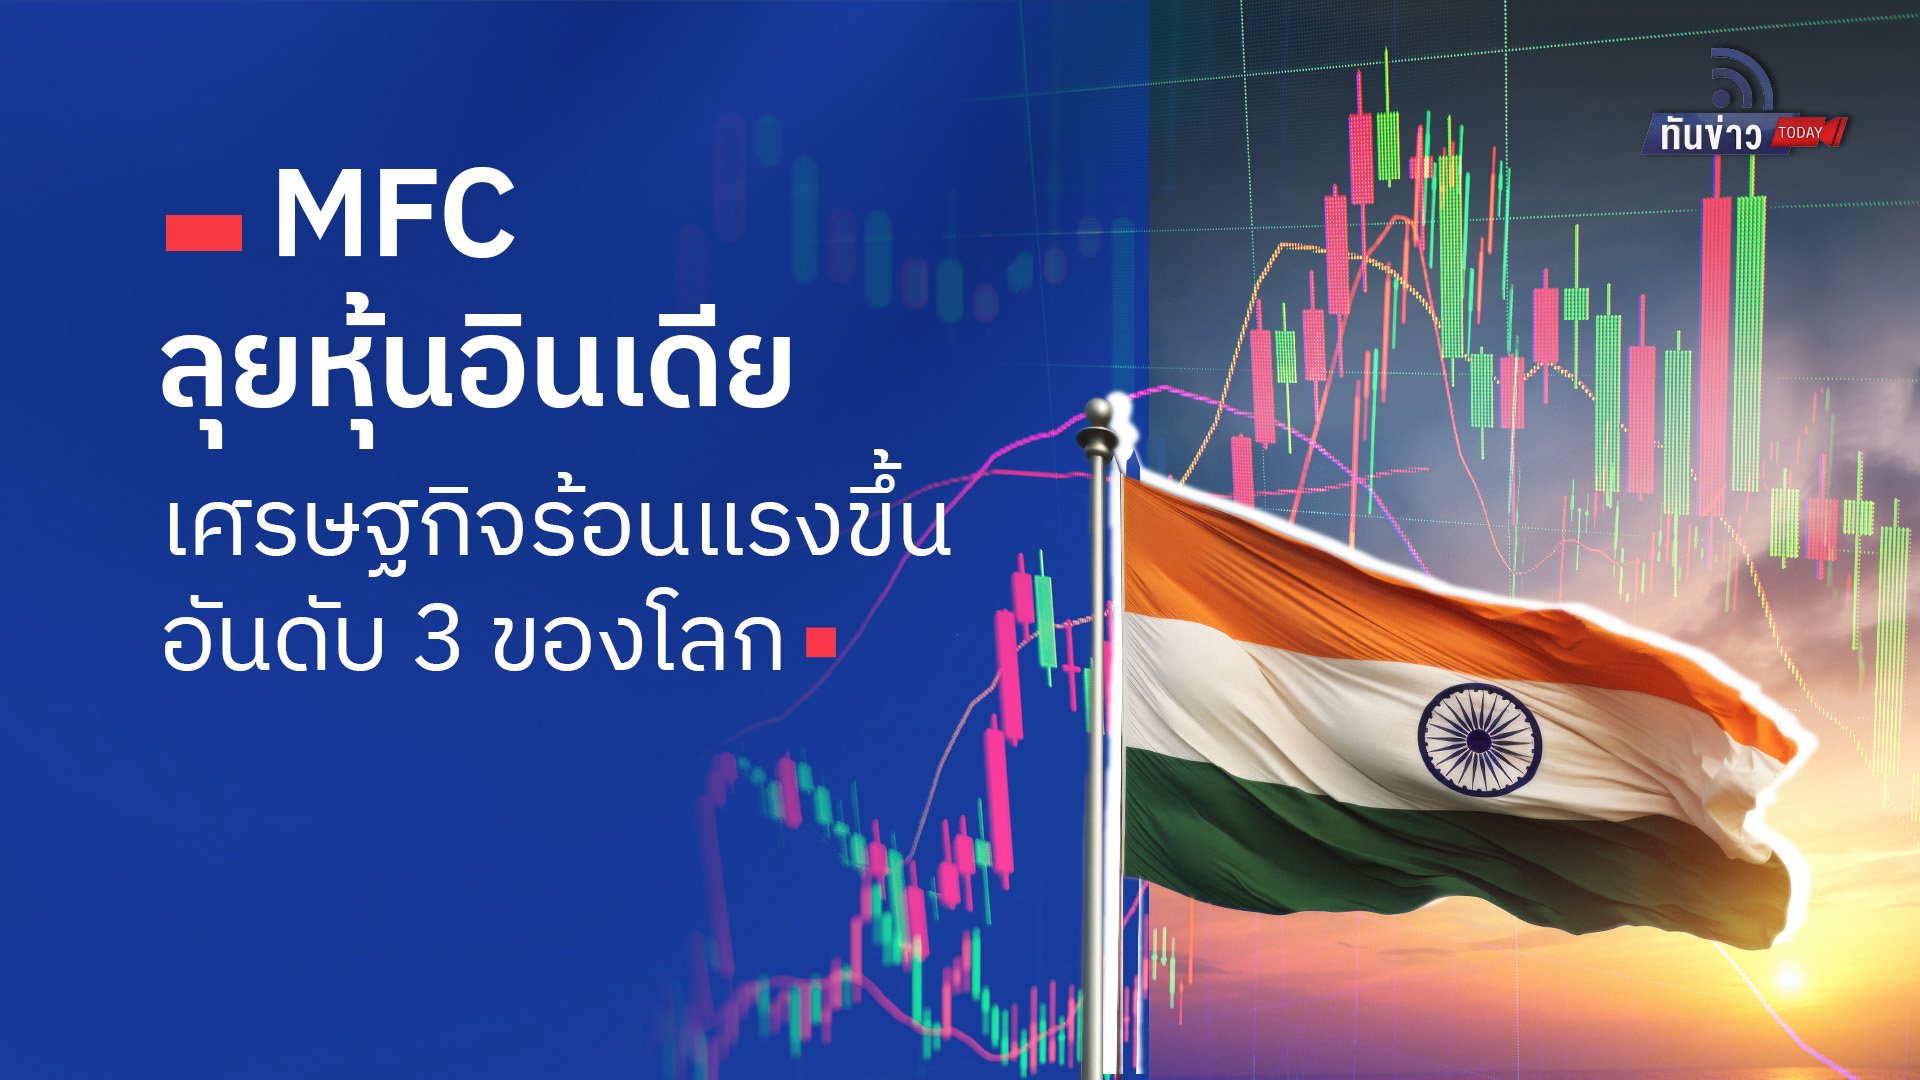 “MFC ลุยหุ้นอินเดีย เศรษฐกิจร้อนแรงขึ้นอันดับ 3 ของโลก